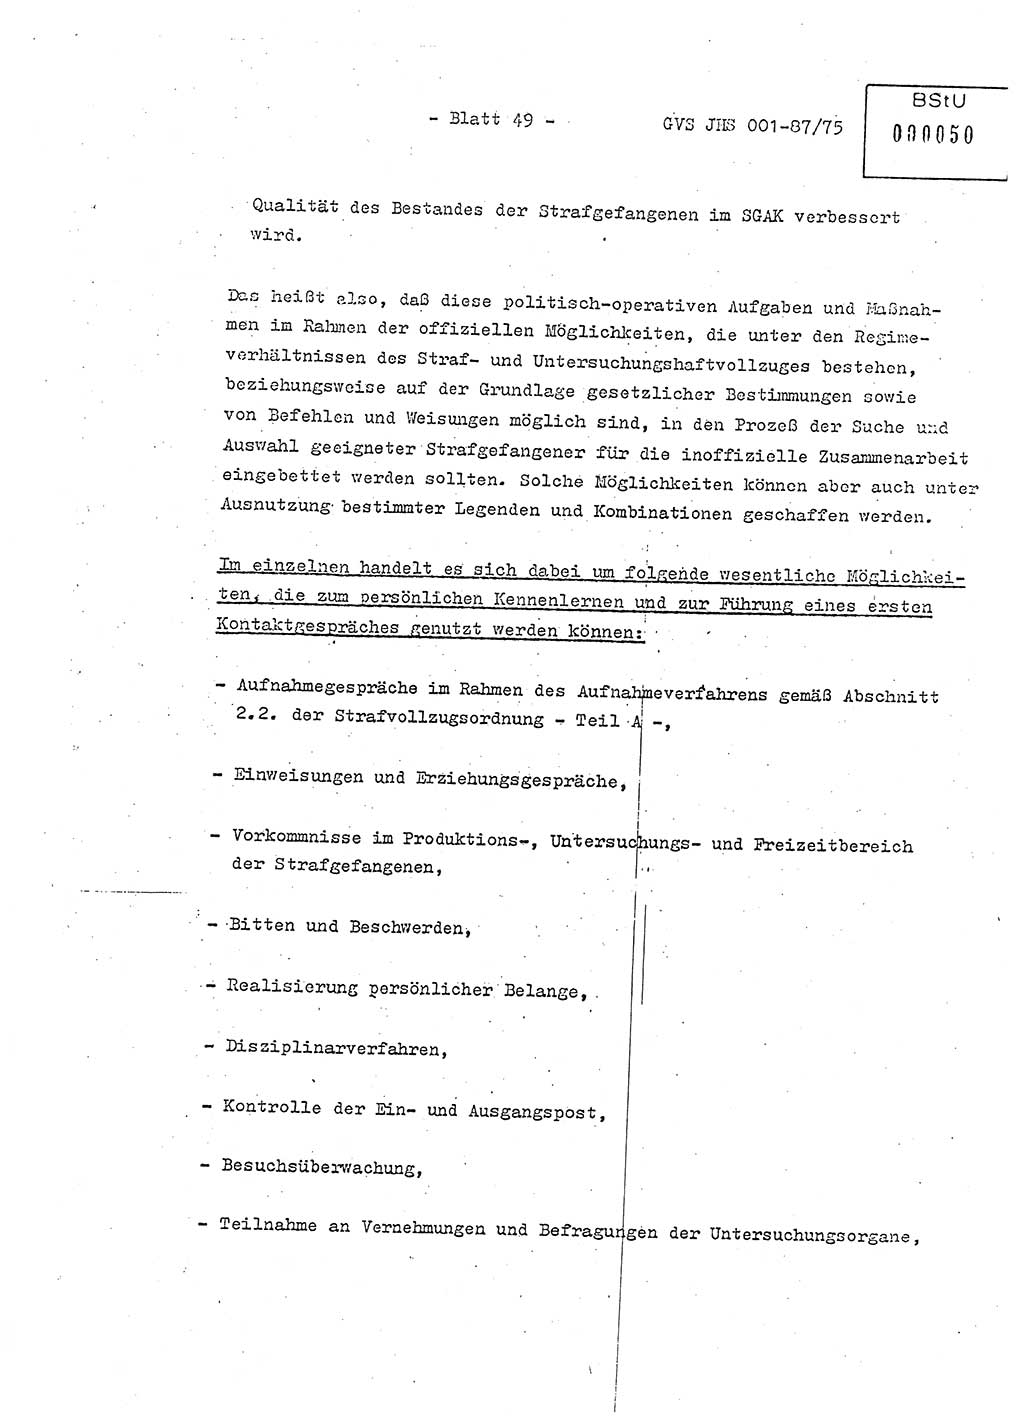 Diplomarbeit Hauptmann Volkmar Heinz (Abt. ⅩⅣ), Oberleutnant Lothar Rüdiger (BV Lpz. Abt. Ⅺ), Ministerium für Staatssicherheit (MfS) [Deutsche Demokratische Republik (DDR)], Juristische Hochschule (JHS), Geheime Verschlußsache (GVS) o001-87/75, Potsdam 1975, Seite 49 (Dipl.-Arb. MfS DDR JHS GVS o001-87/75 1975, S. 49)